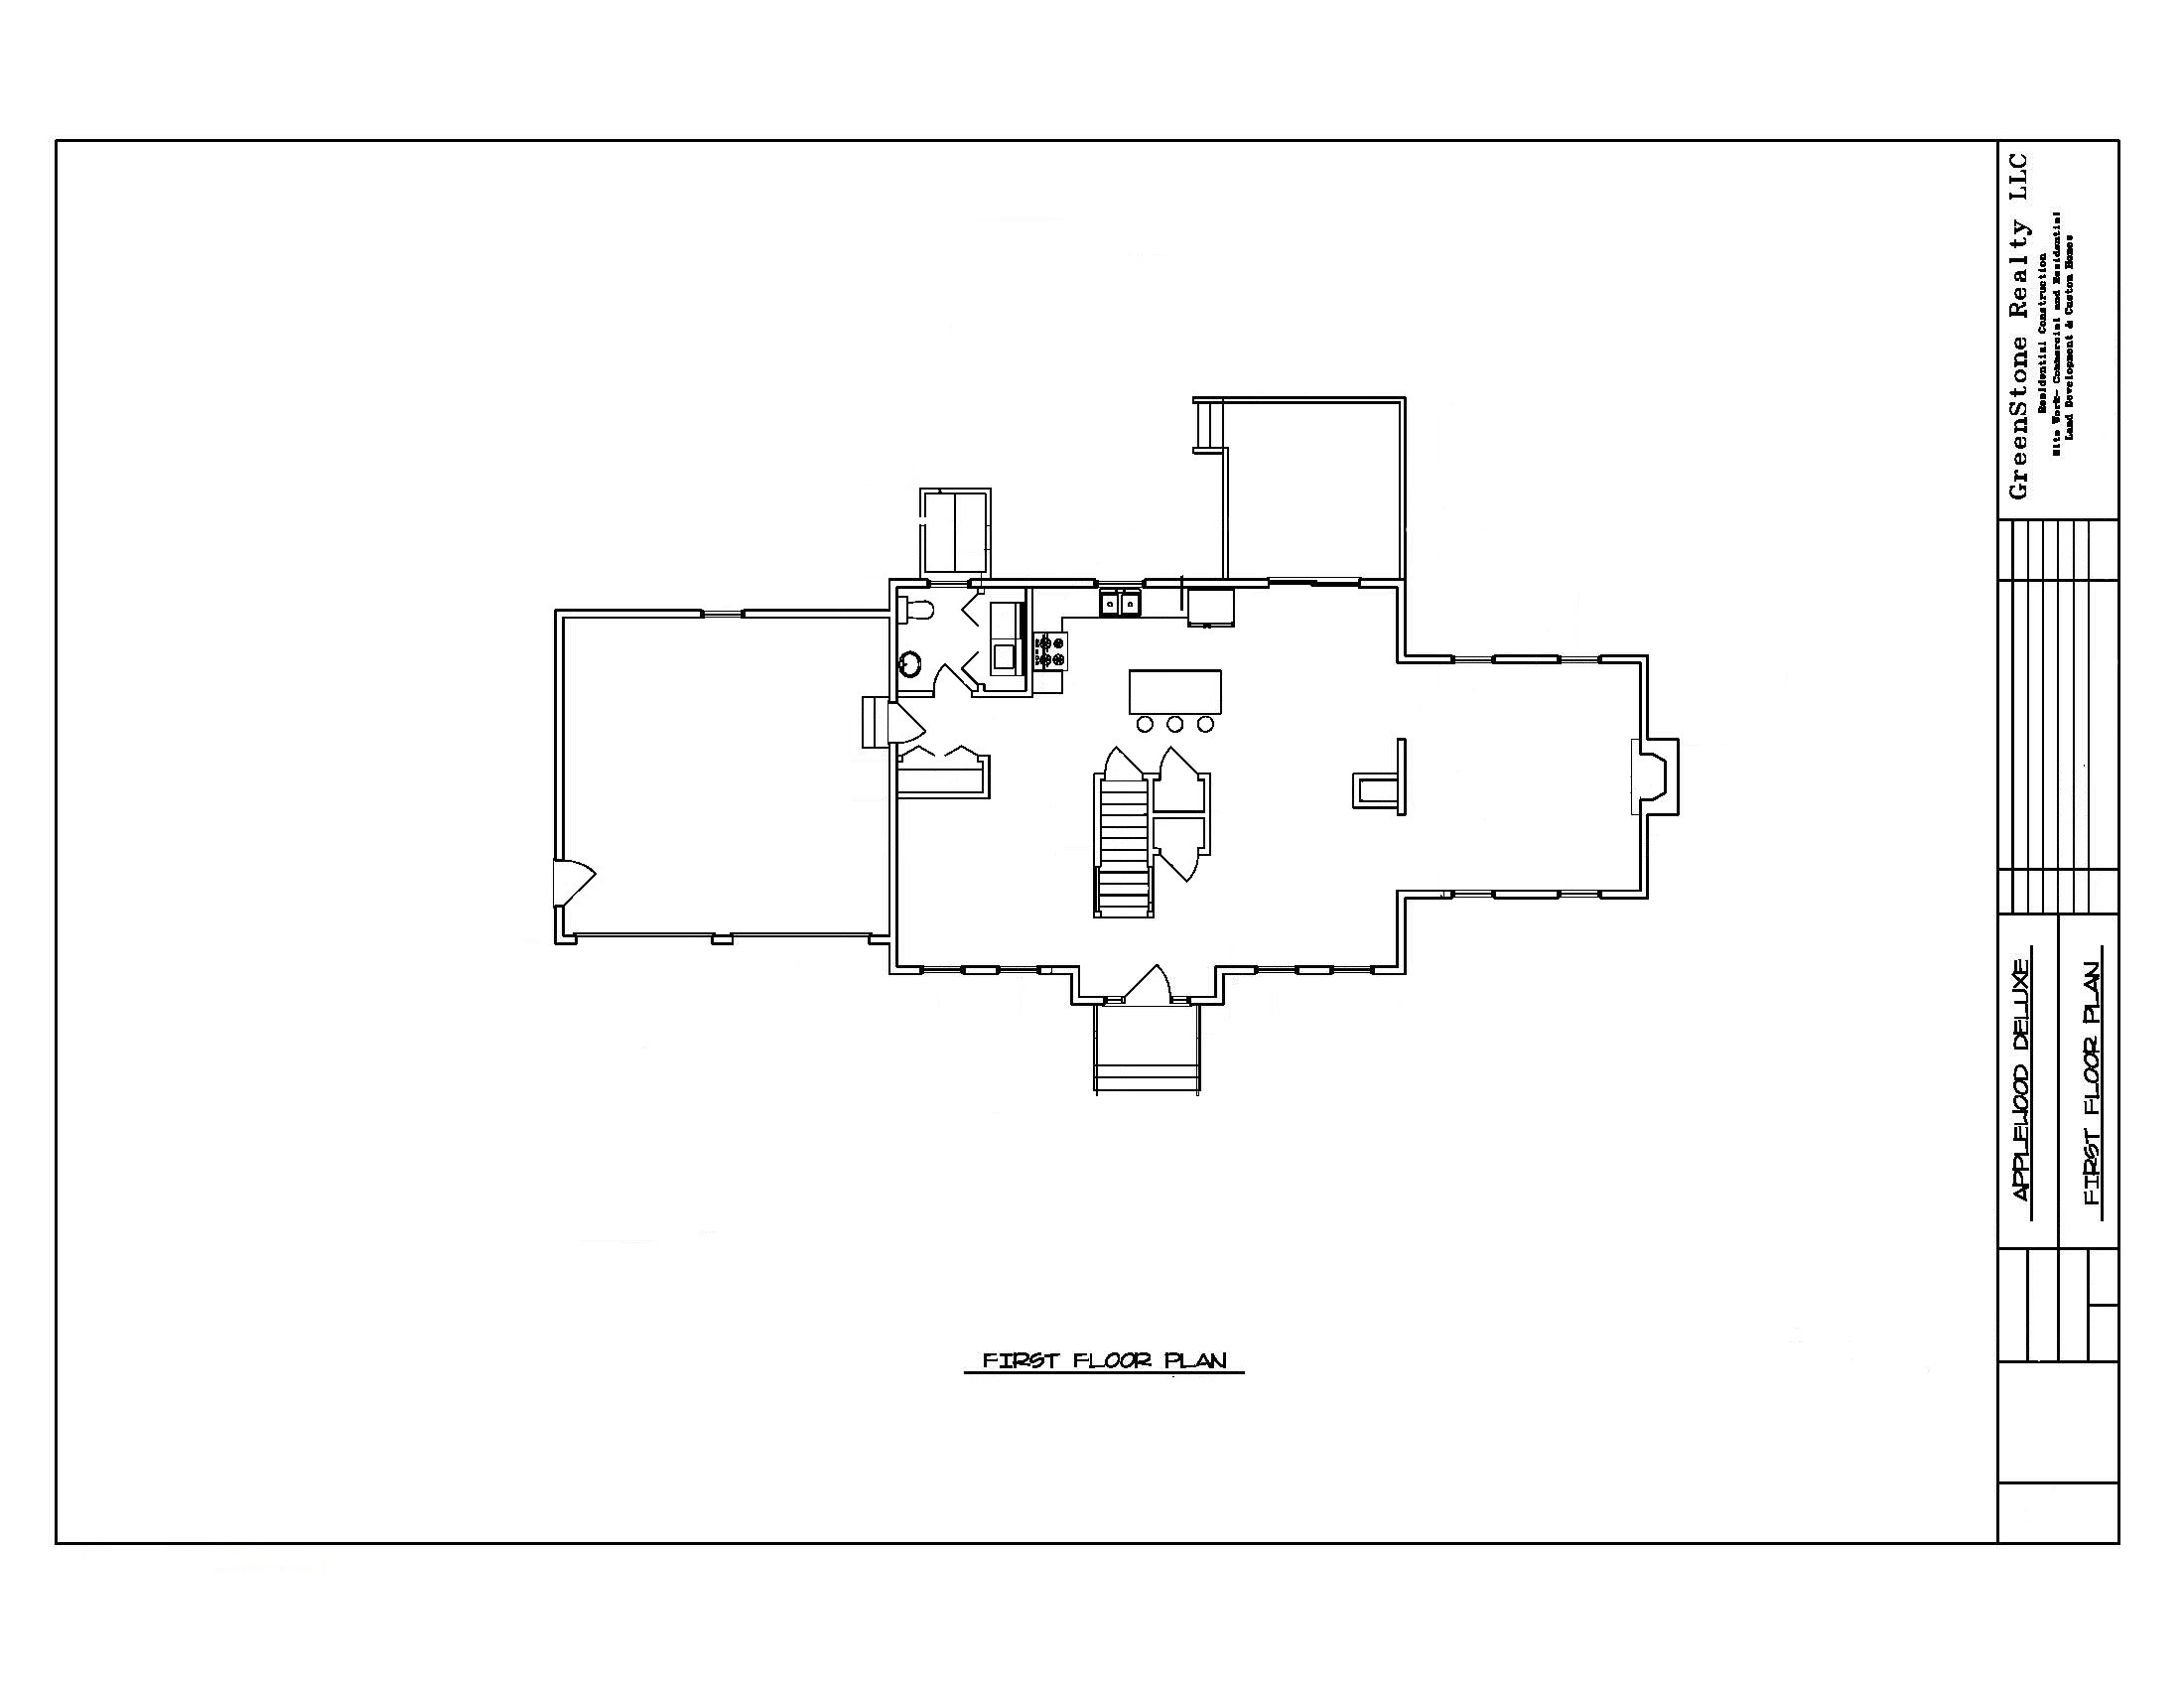 The Applewood Deluxe First Floor Plan